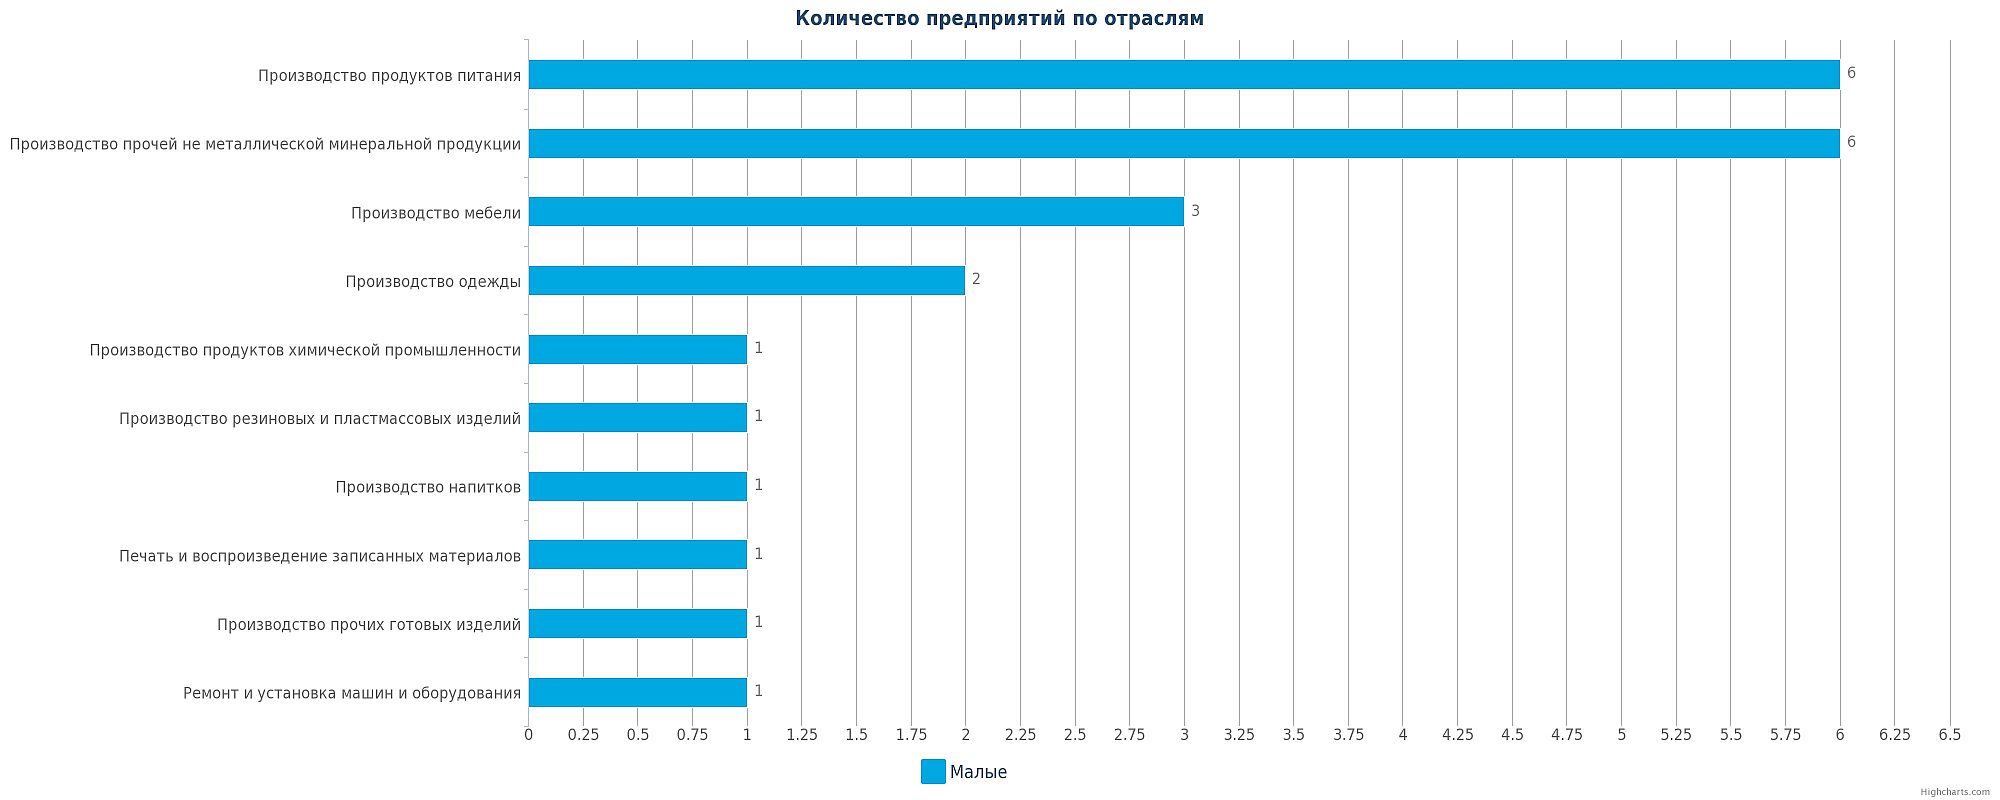 Крупнейшие компании Казахстана по отраслям.